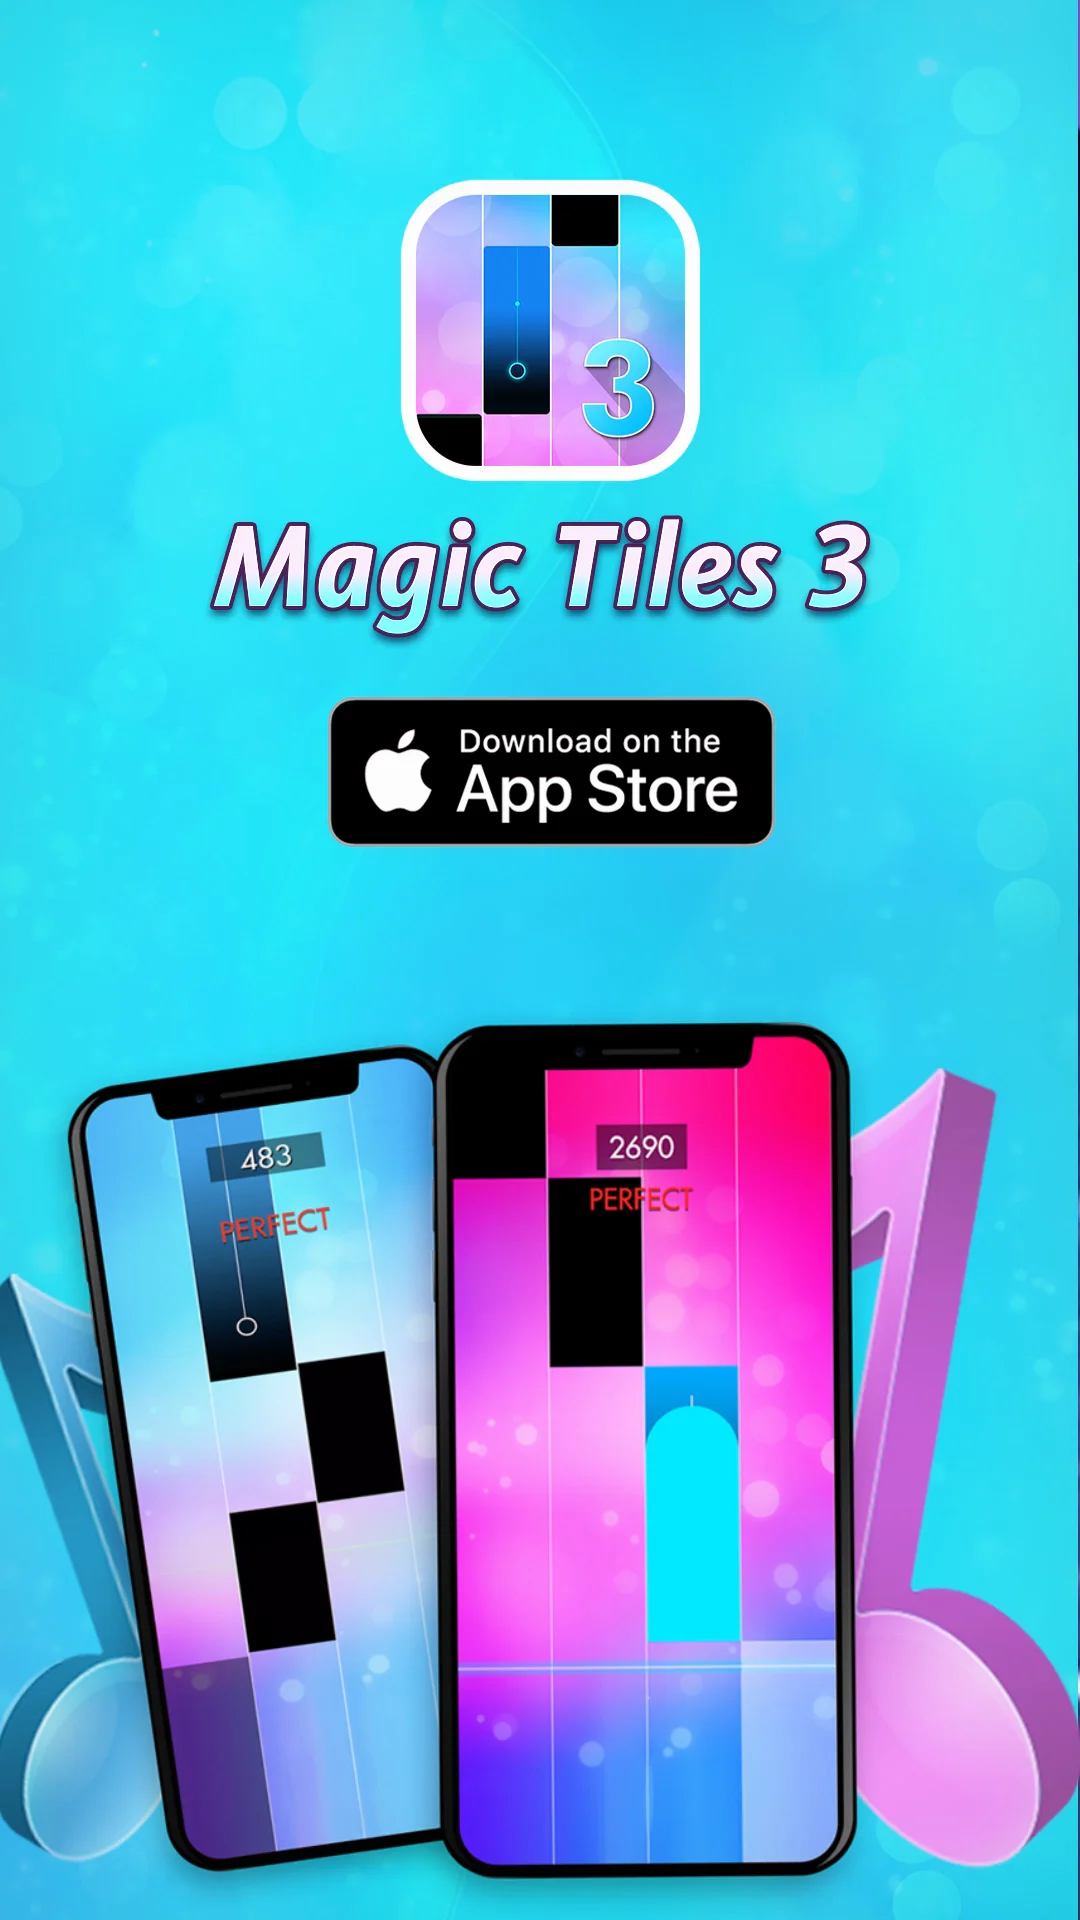 Magic Tiles 3 - Play Magic Tiles Online